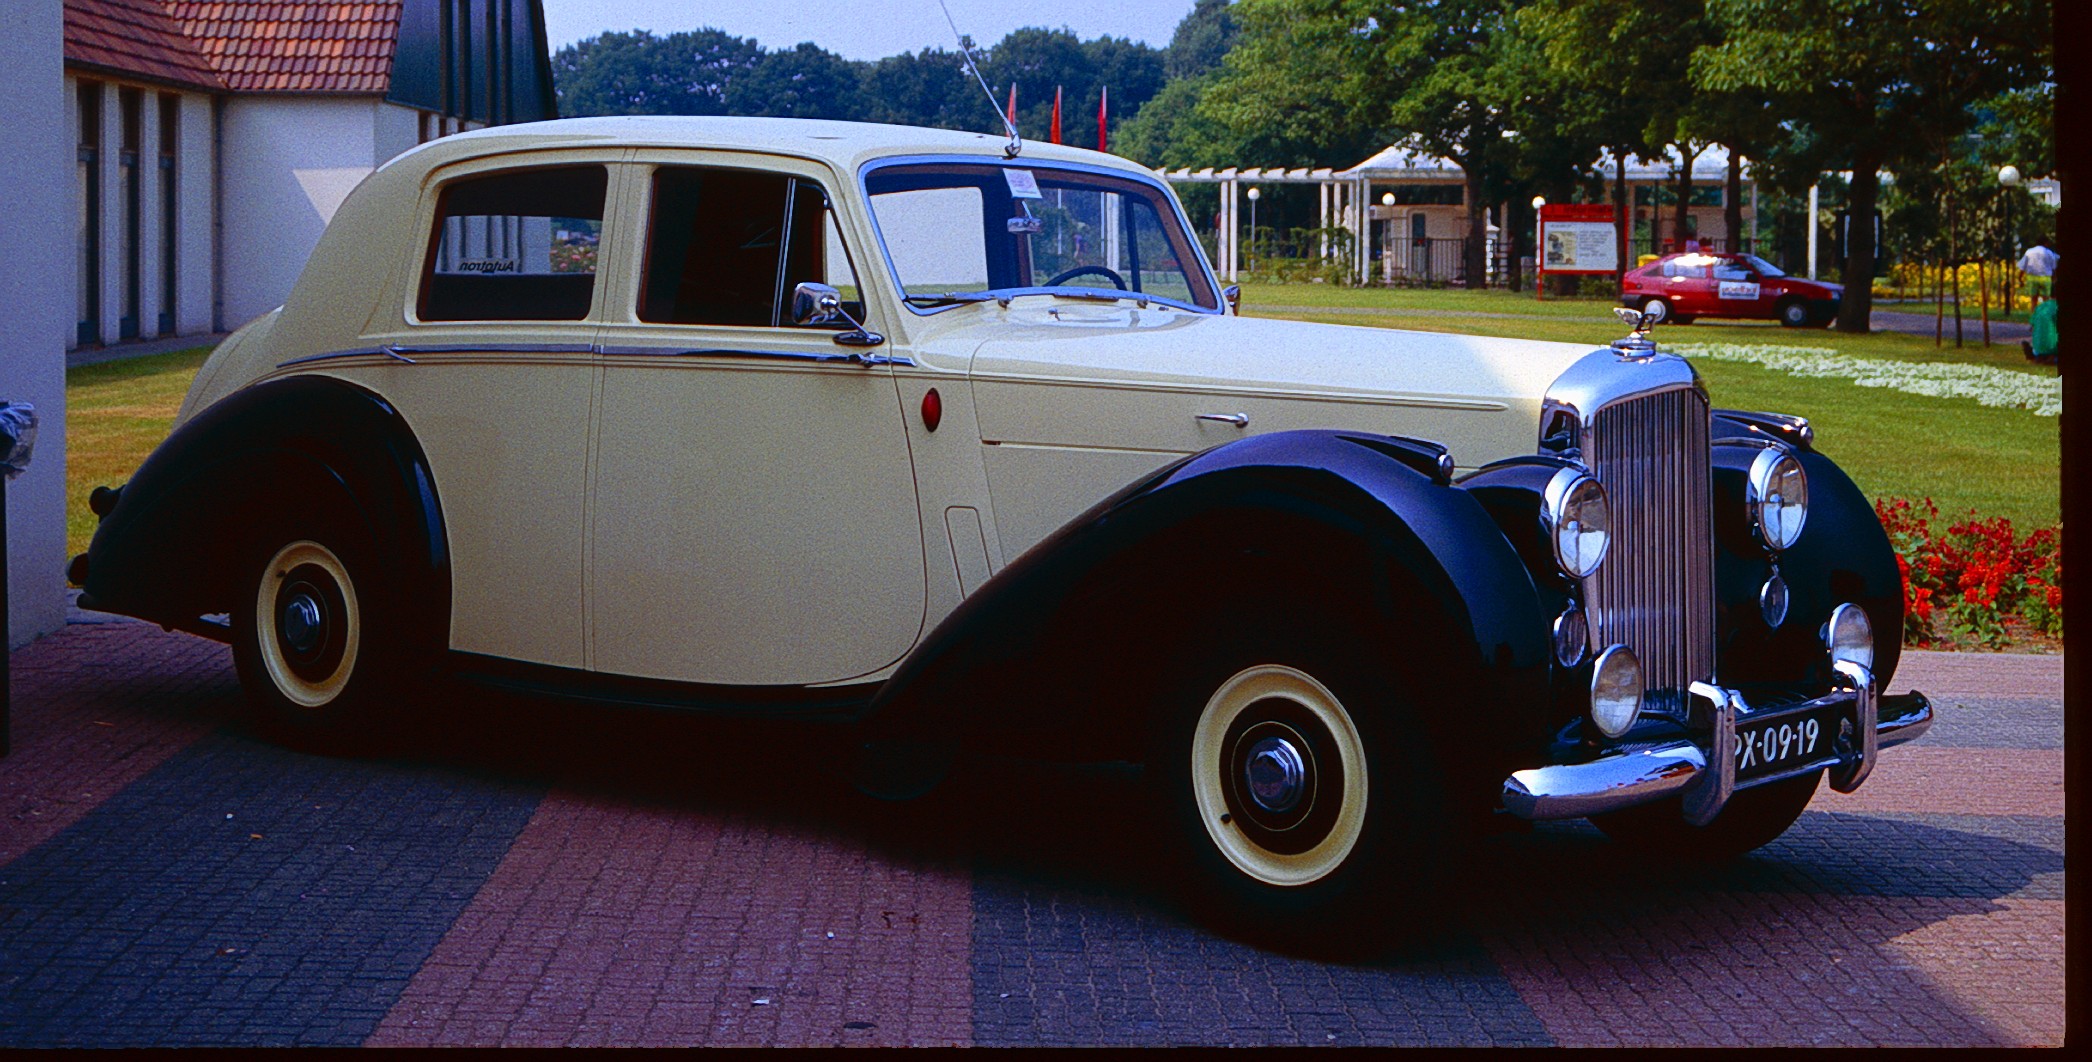 Bentley Mark VI var först ut av Rolls Royce efterkrigsbilar under 1946. 